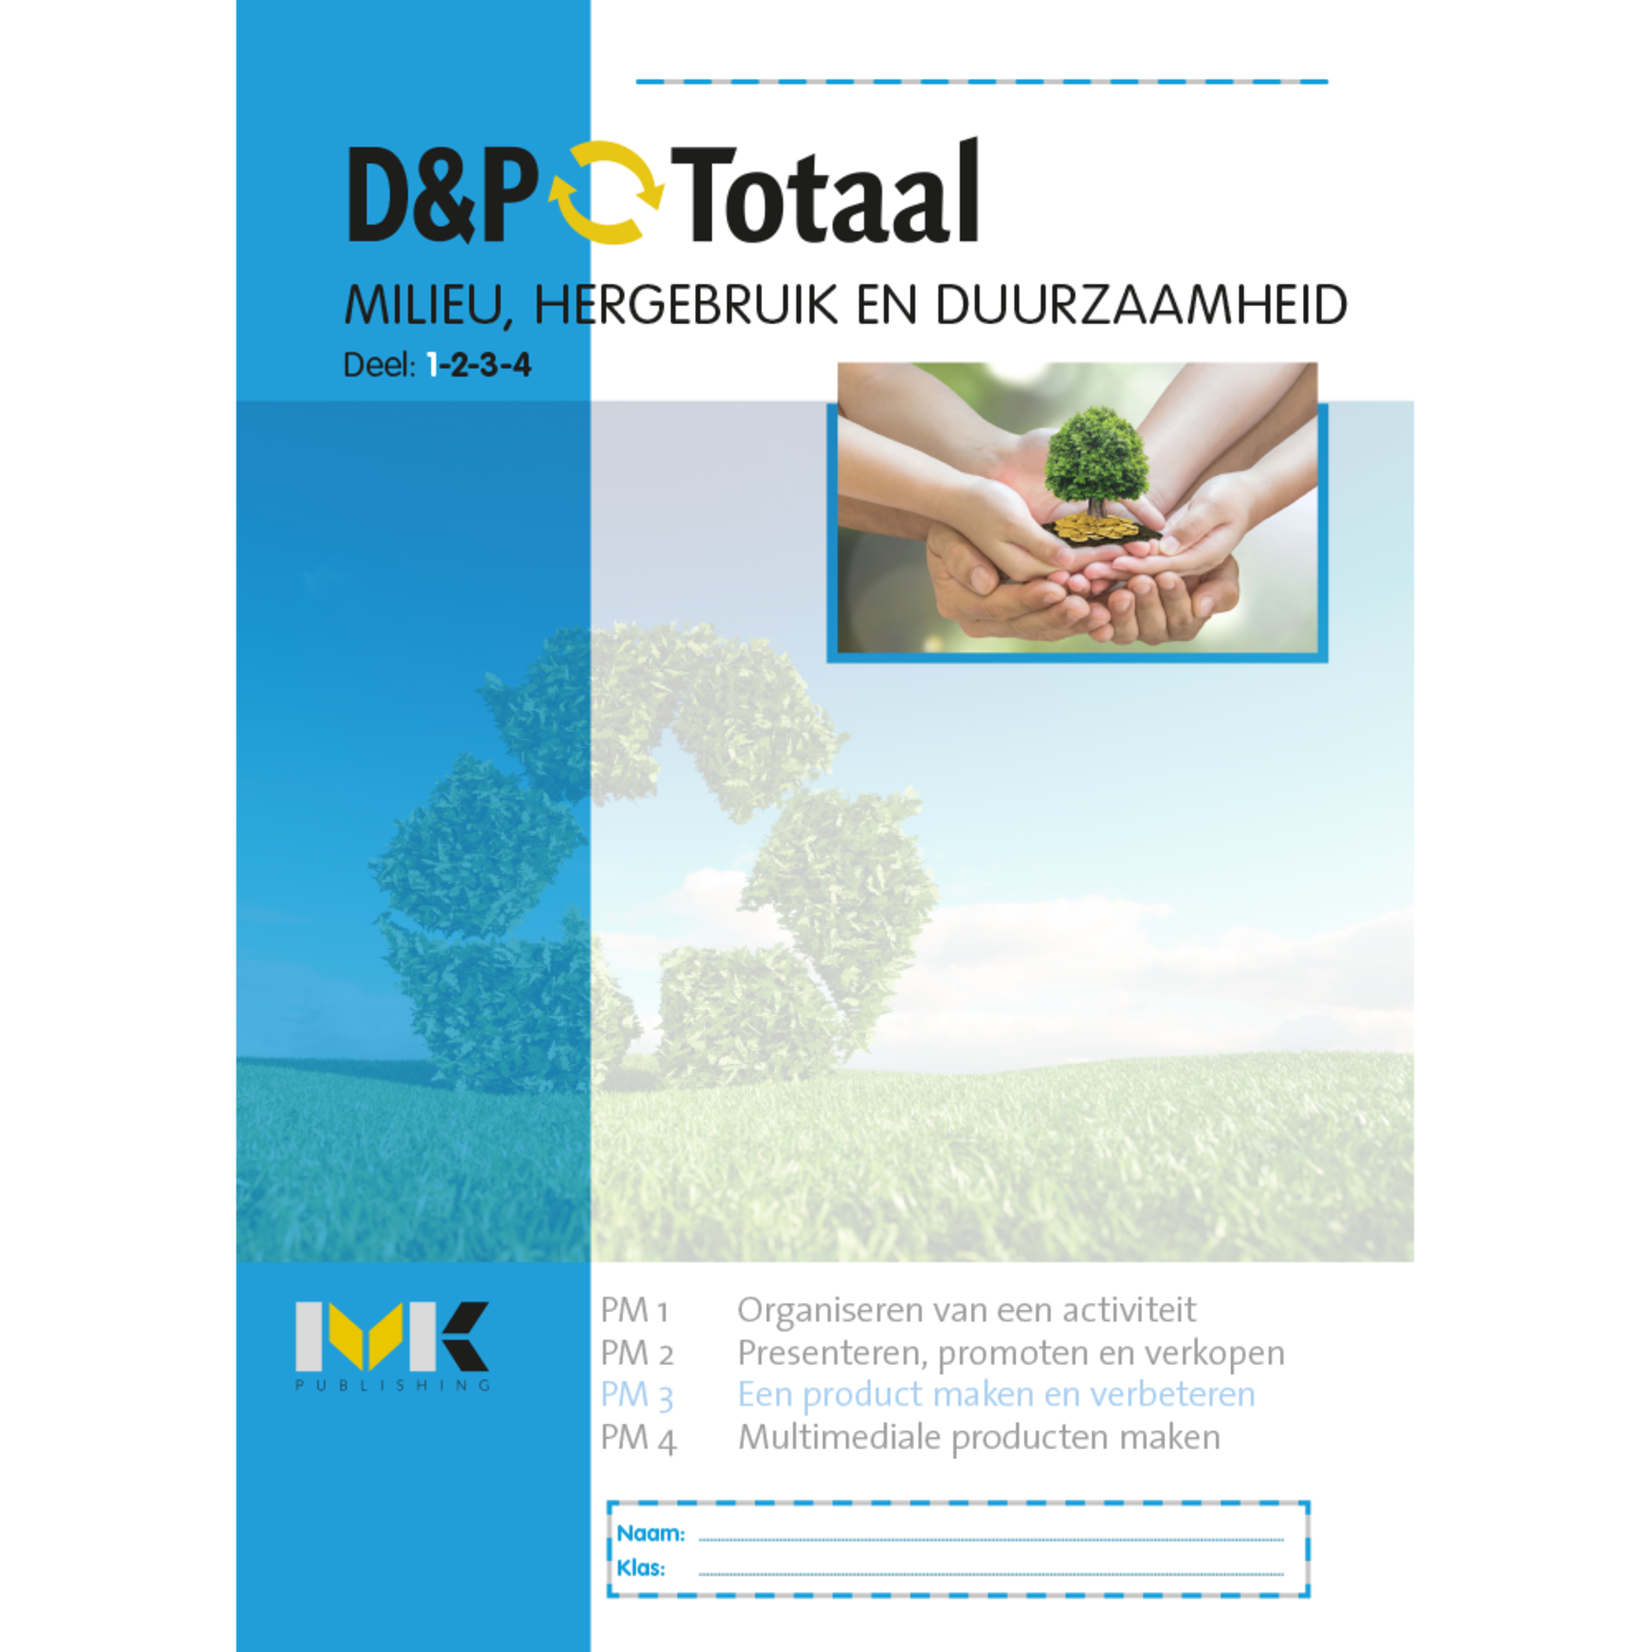 D&P-Totaal - D&P Milieu, hergebruik en duurzaamheid (PM3/1914)